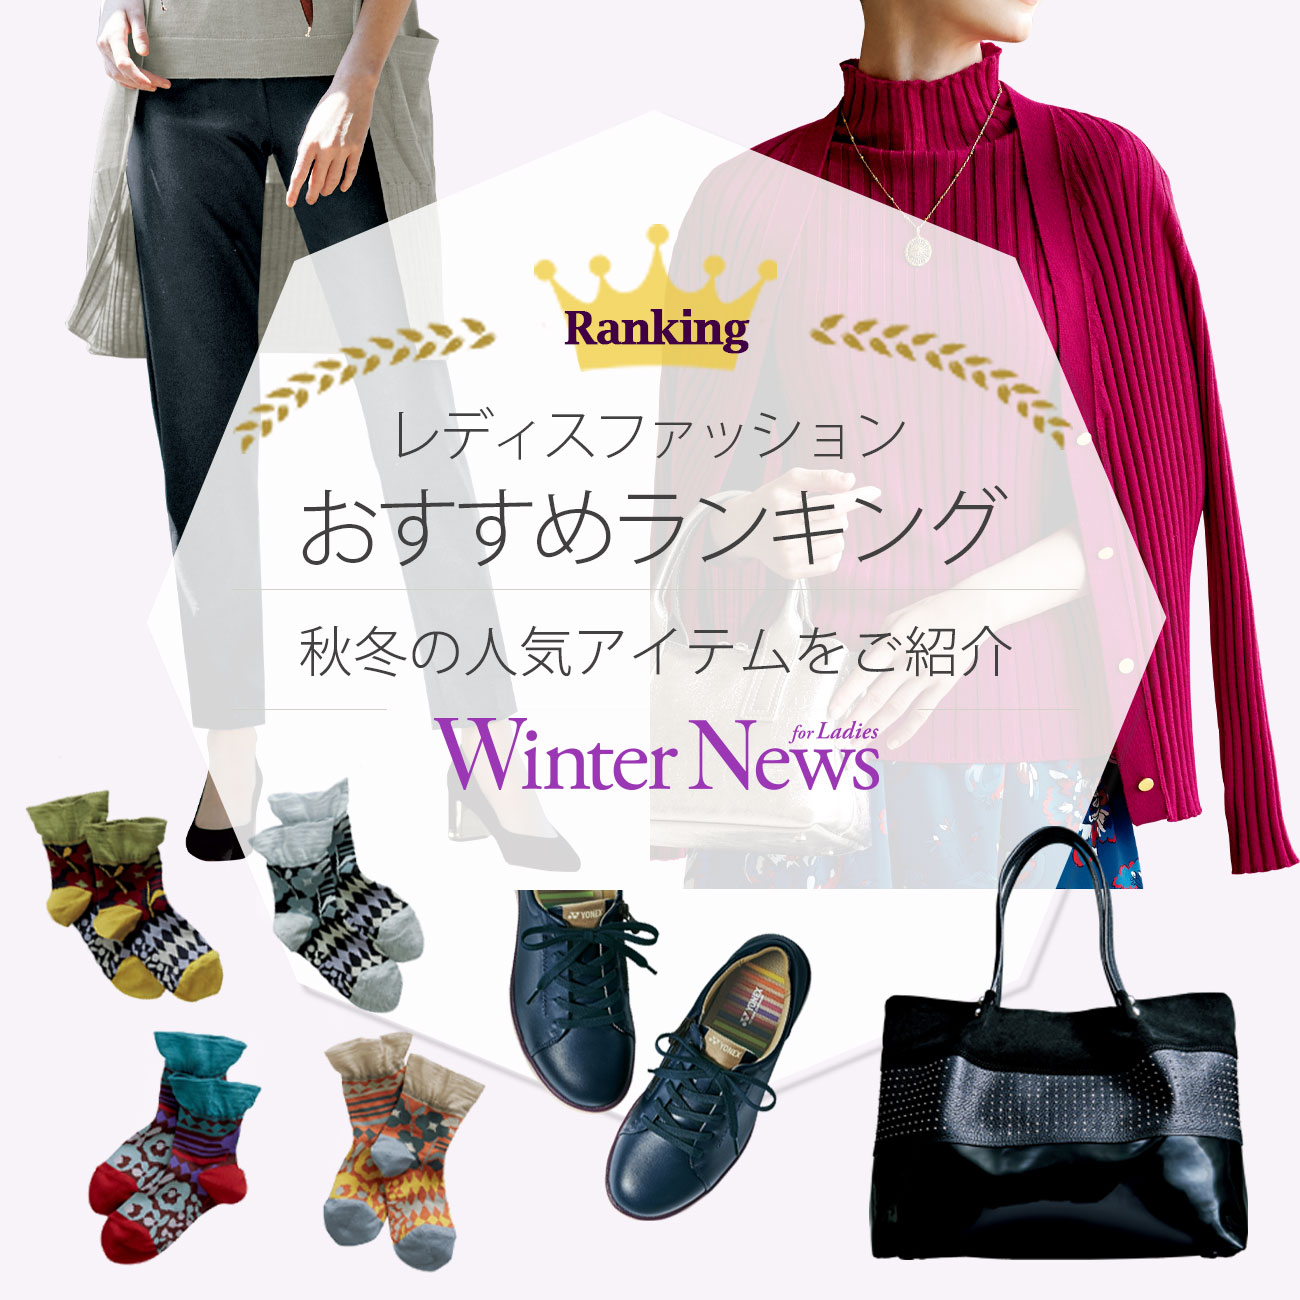 【特集】レディス人気おすすめランキング Winter News for Ladies